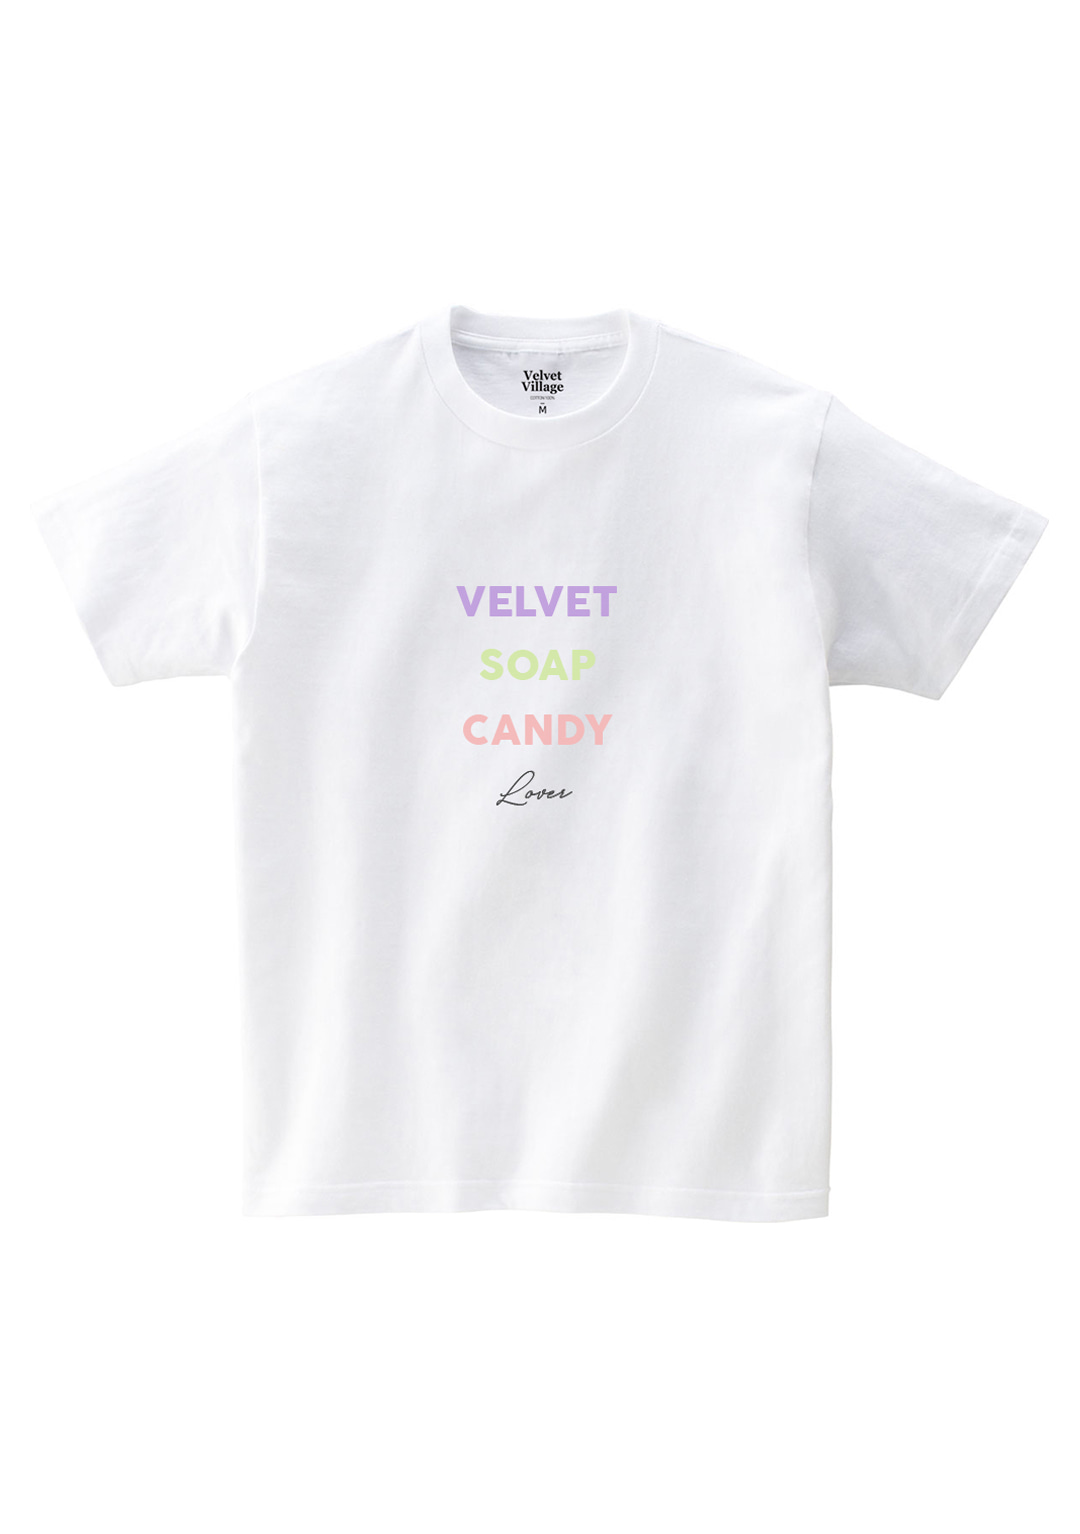 Velvet soap candy T-shirt (White)